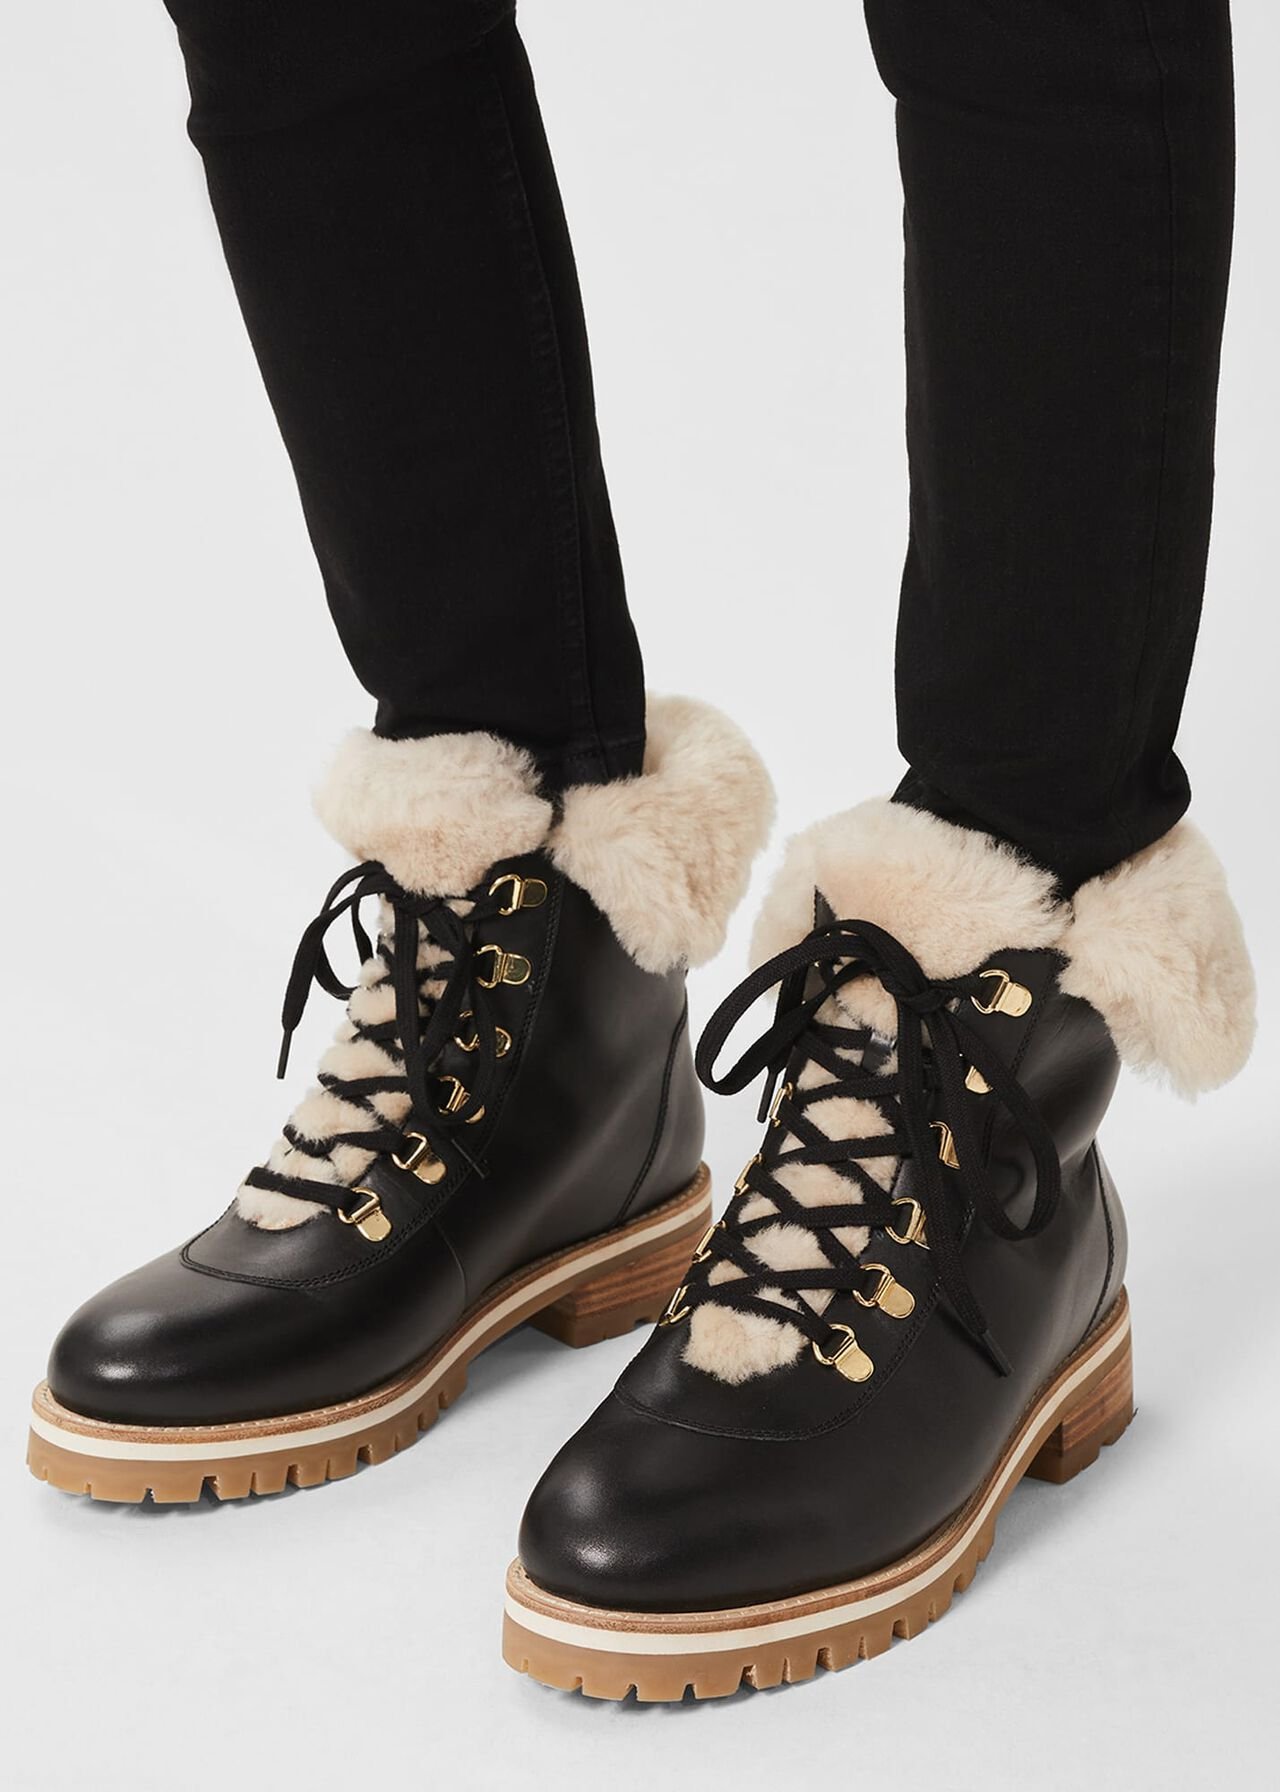 Kaden Leather Ankle Boots, Black, hi-res